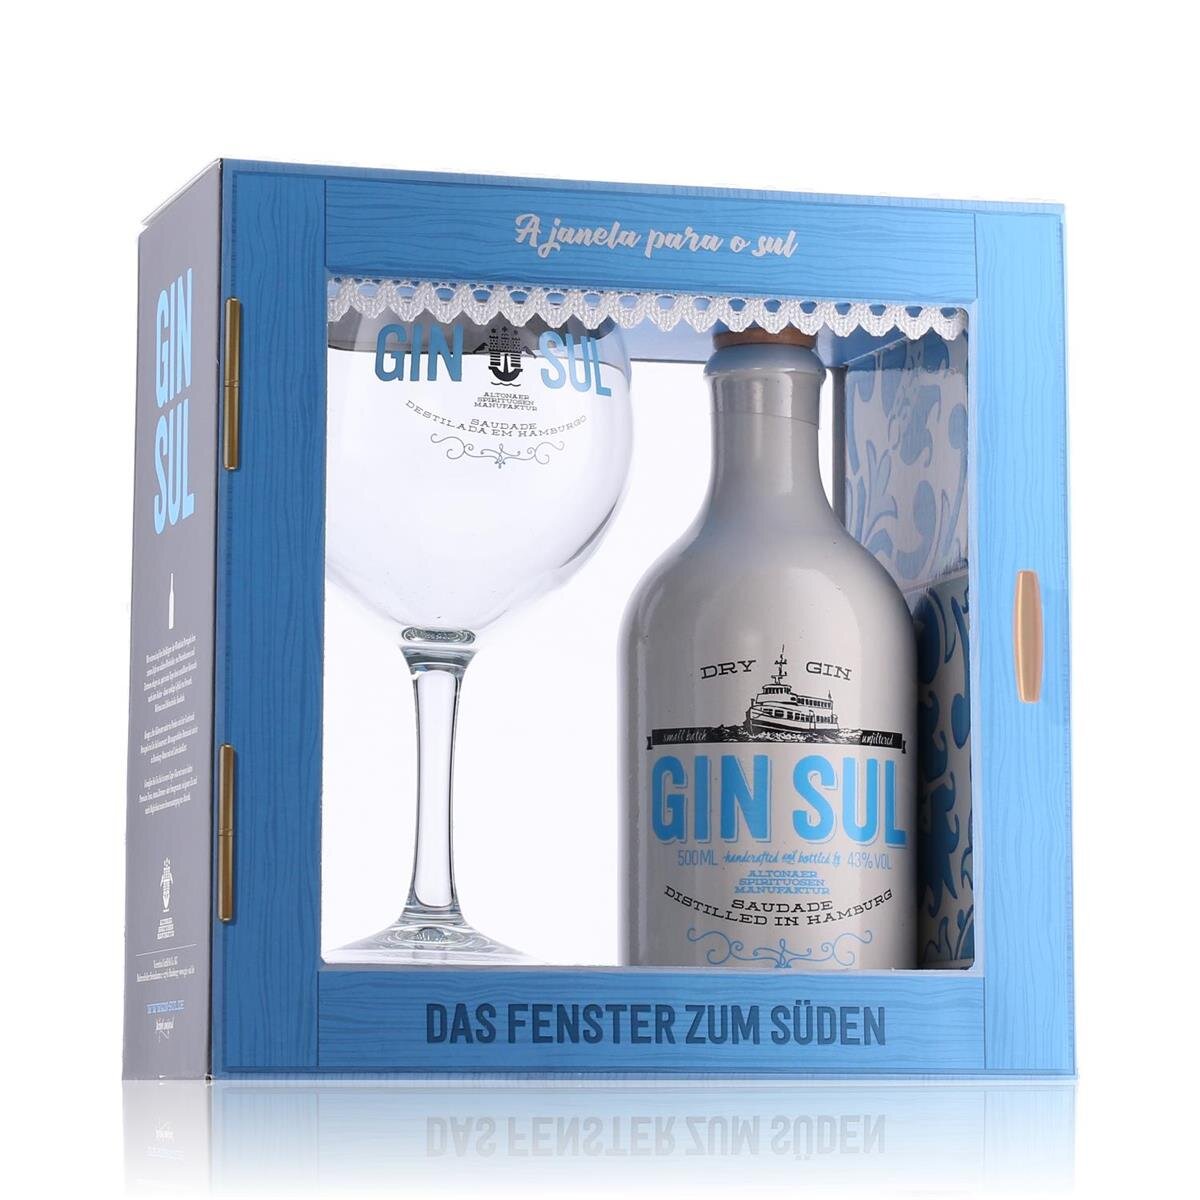 Gin Sul Dry Gin 43% Vol. 0,5l in Geschenkbox mit Glas, 27,69 €